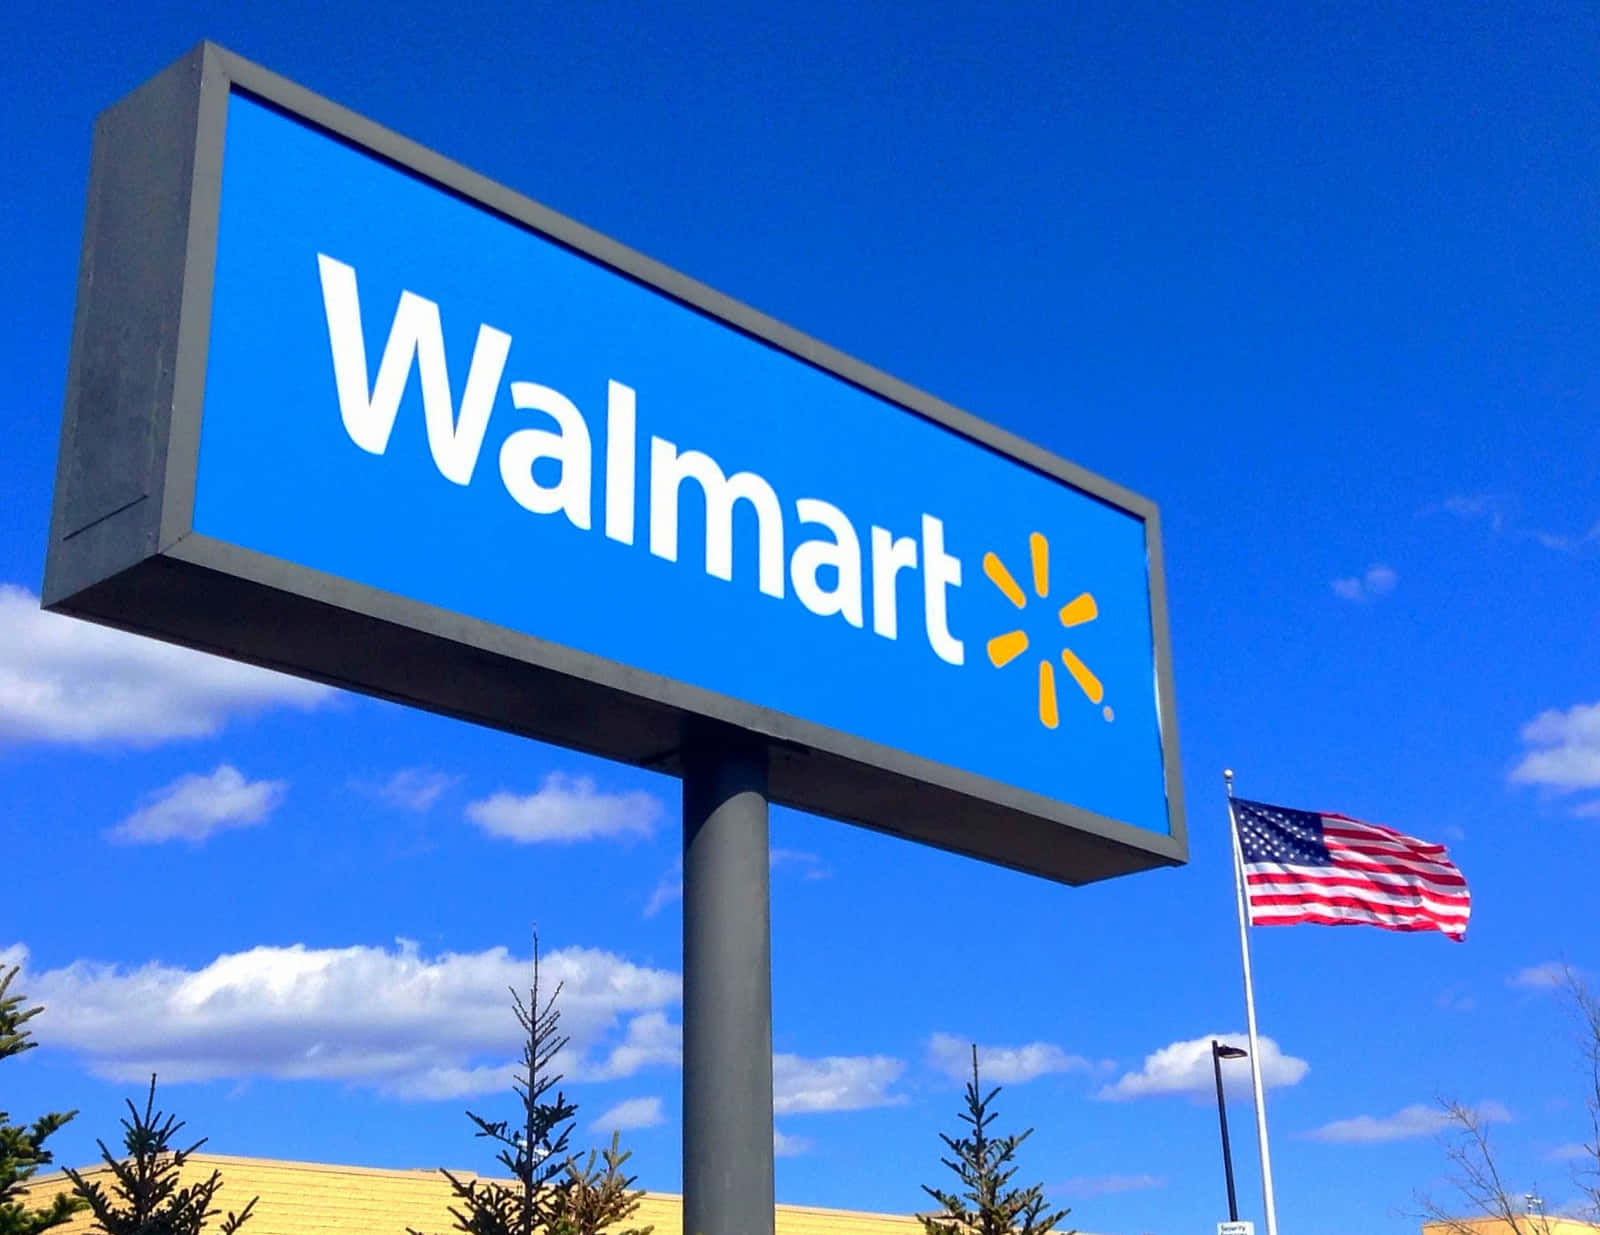 Letrerode Walmart Frente A Un Cielo Azul